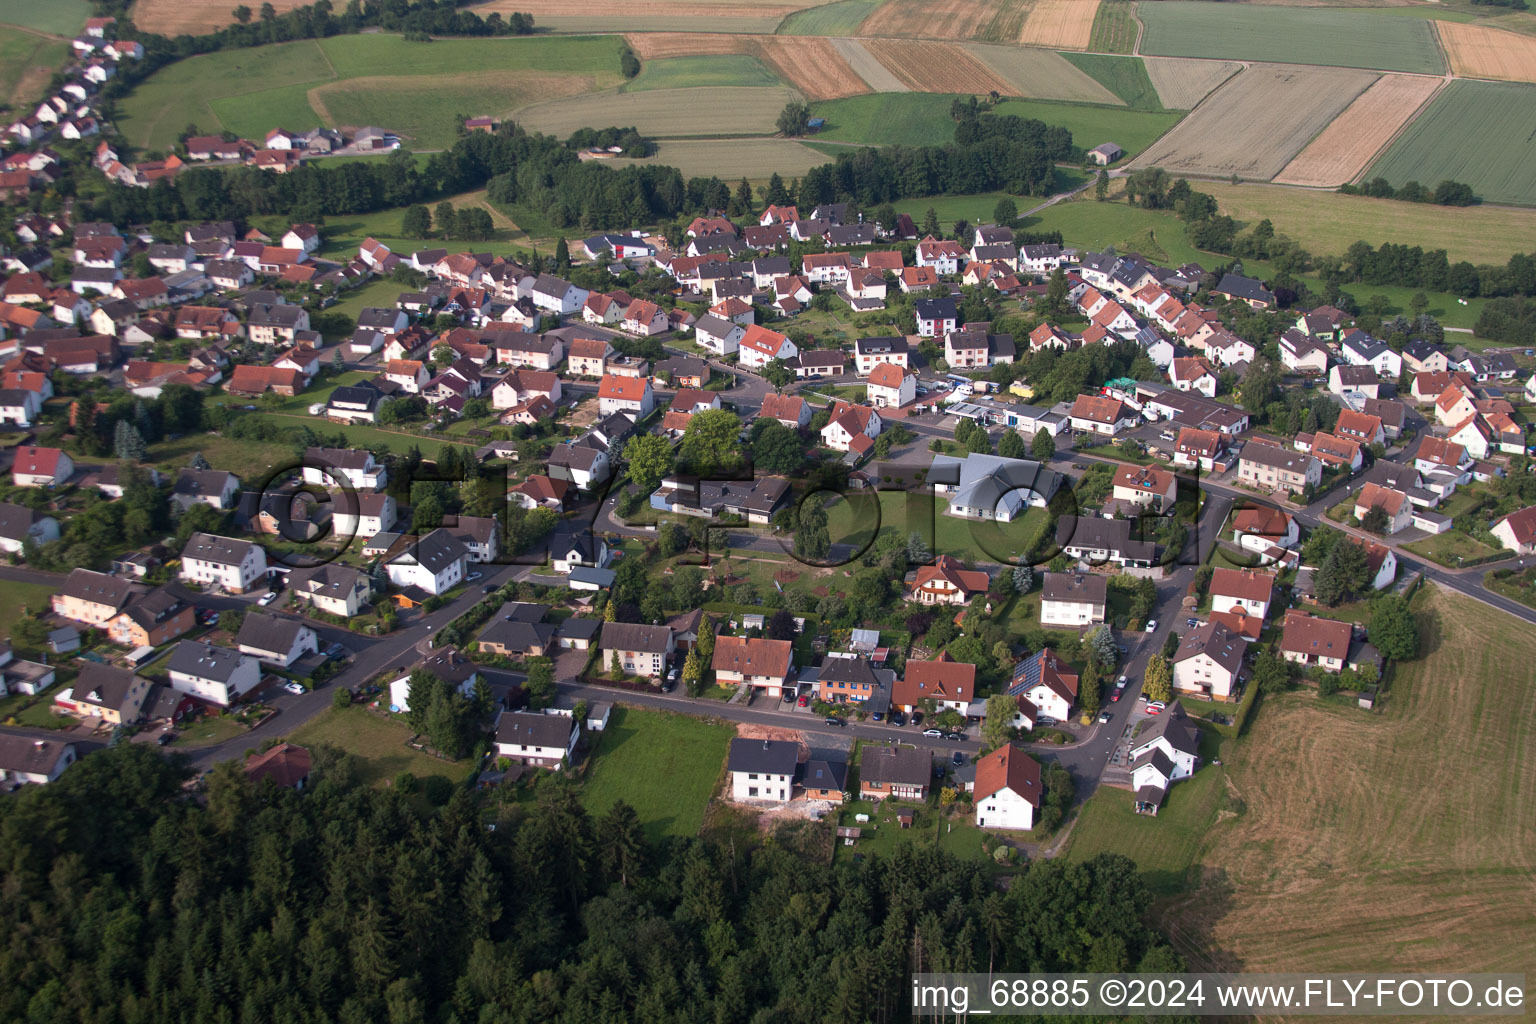 Luftbild von Ortskern am Marktplatz in Neuhof im Bundesland Hessen, Deutschland